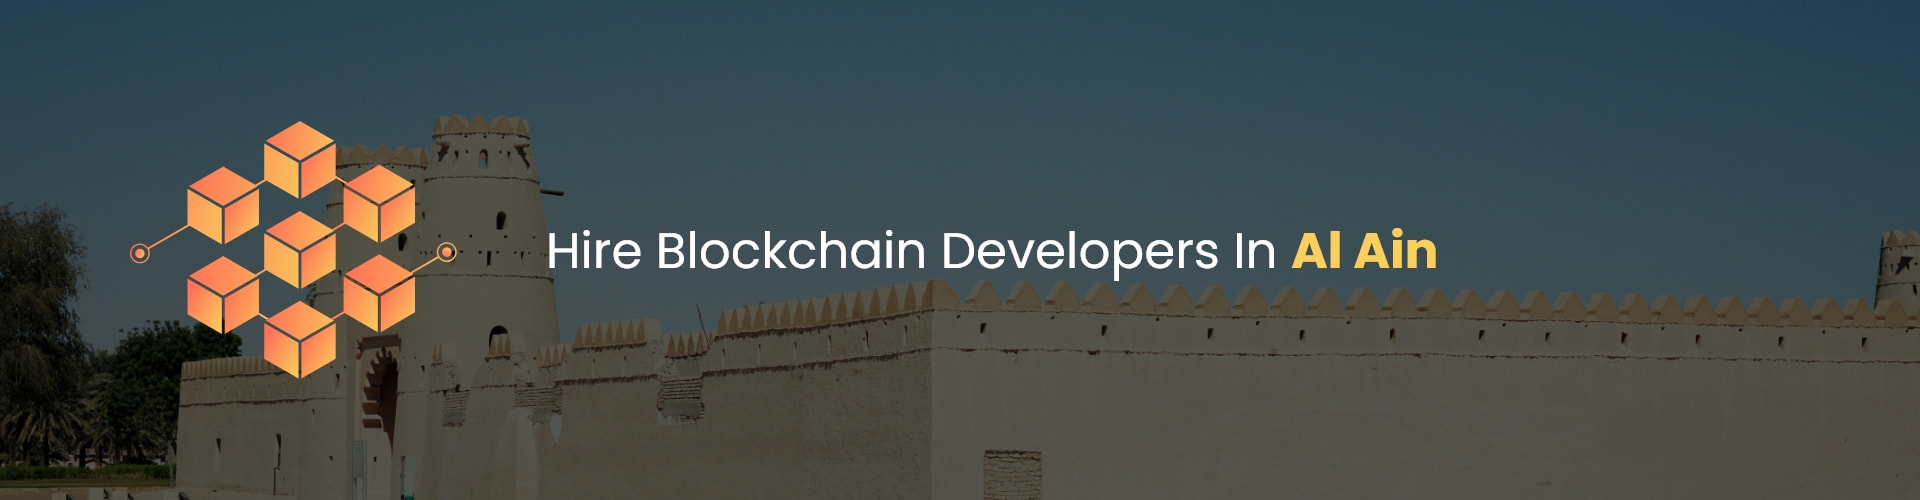 hire blockchain developers in al ain